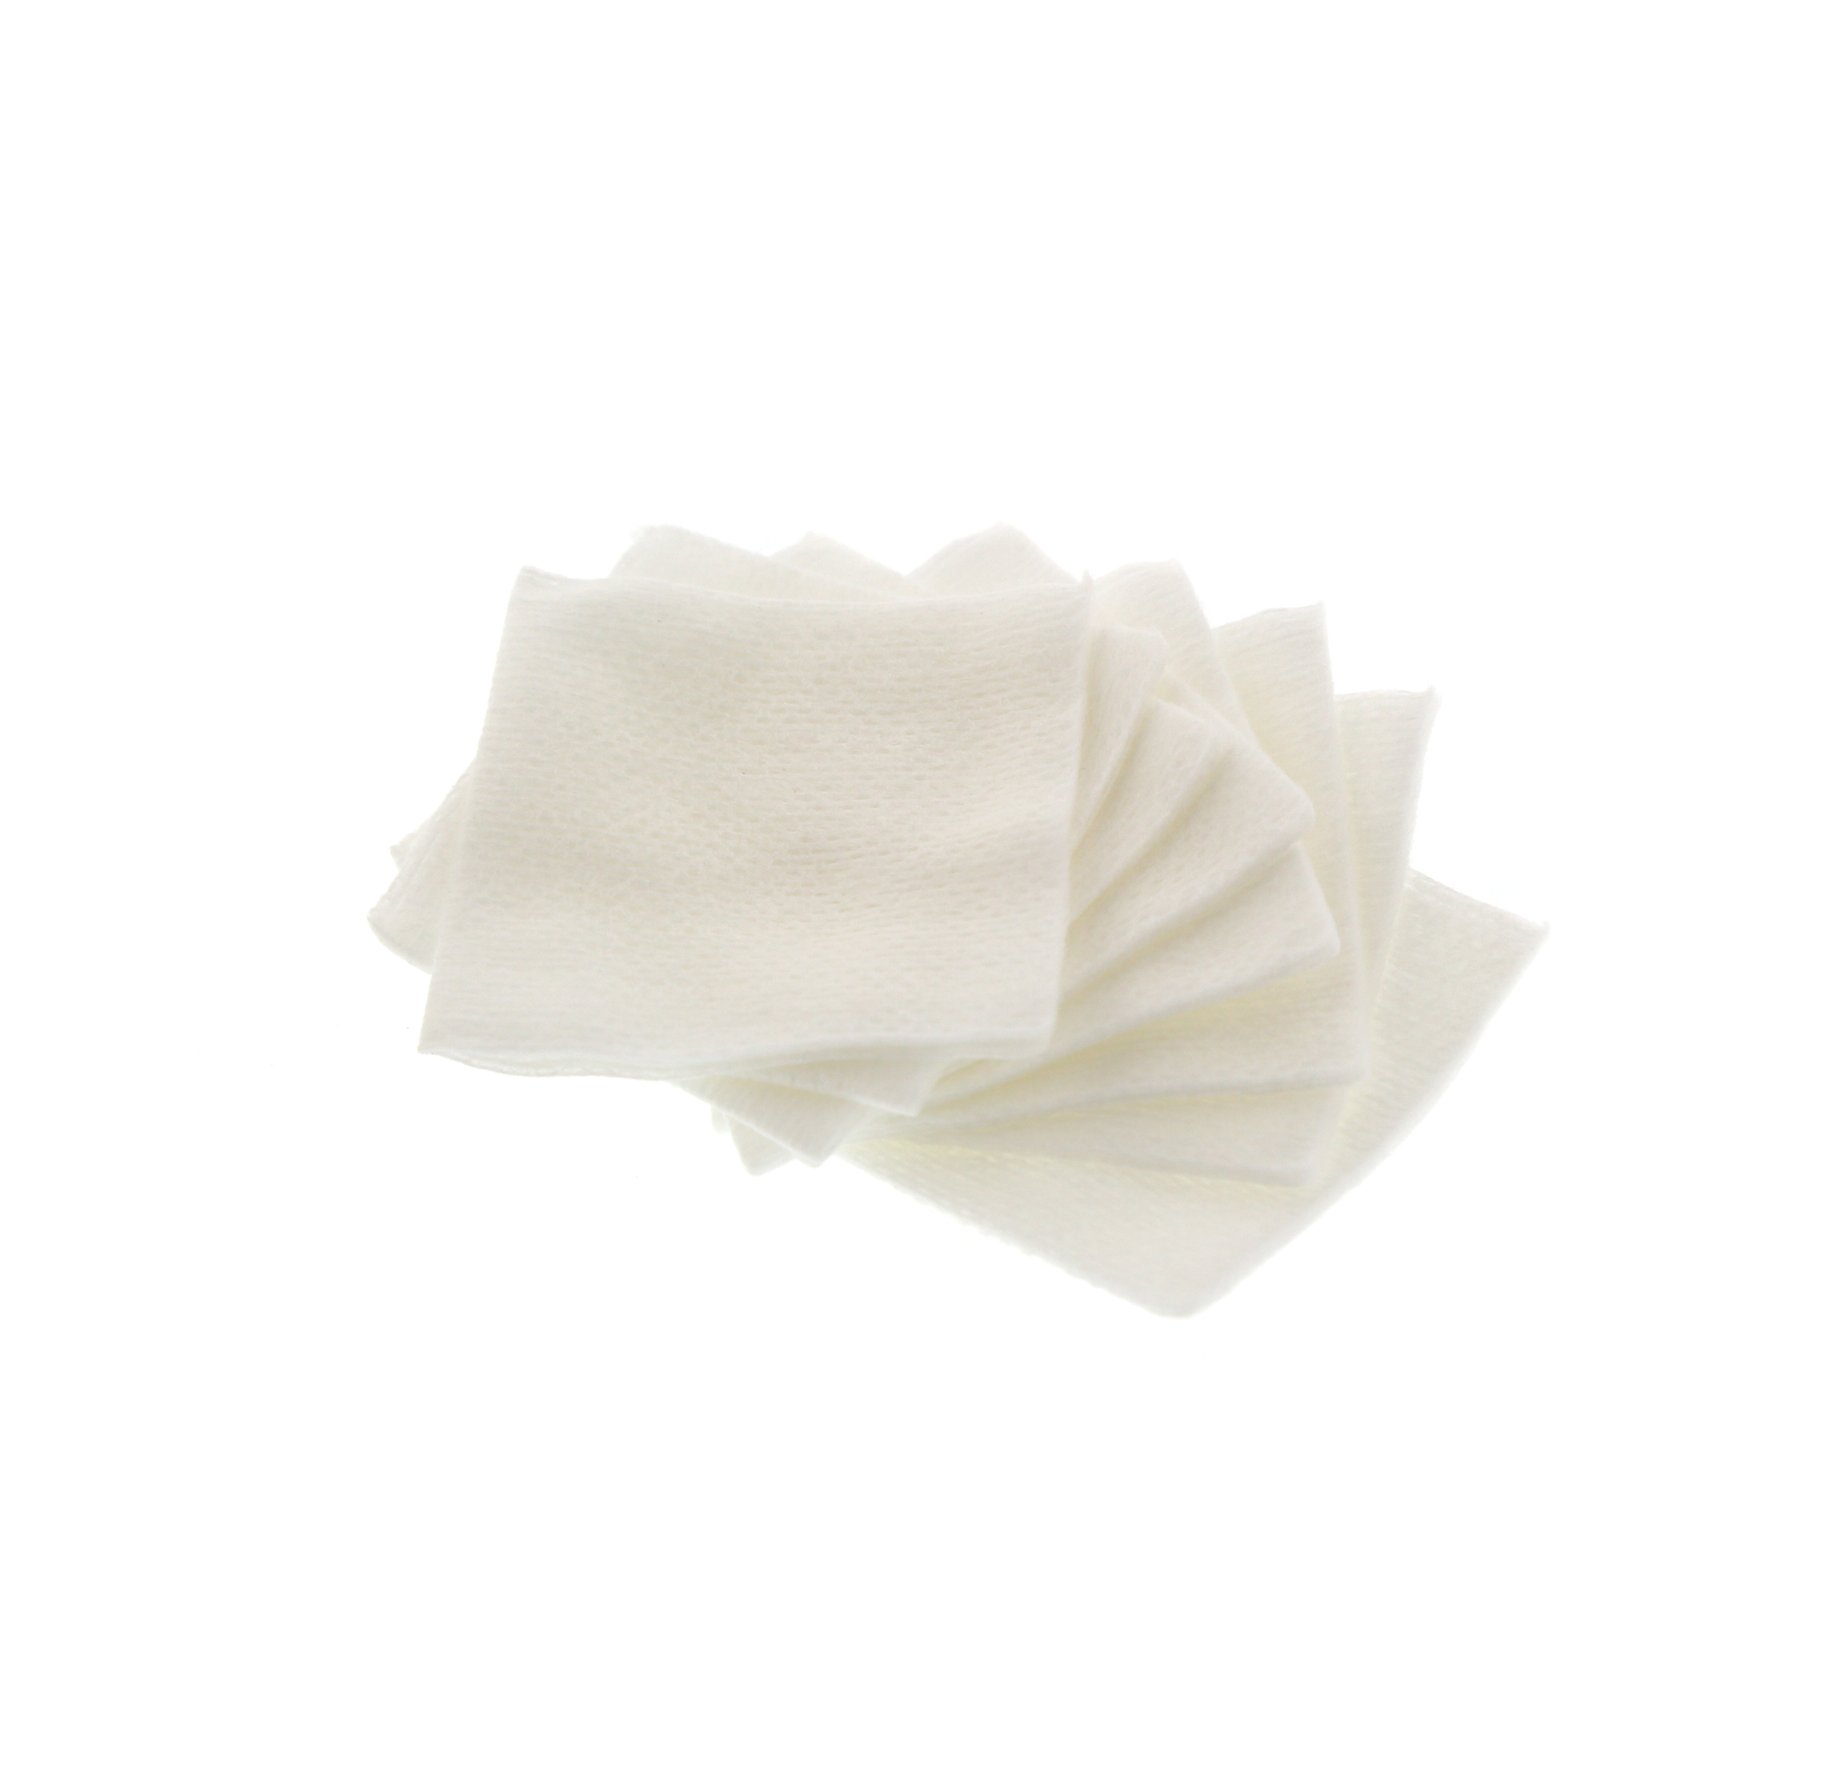 Cotton Swabs (Non-Sterile) 5 x 5cm - Woven 8 ply 